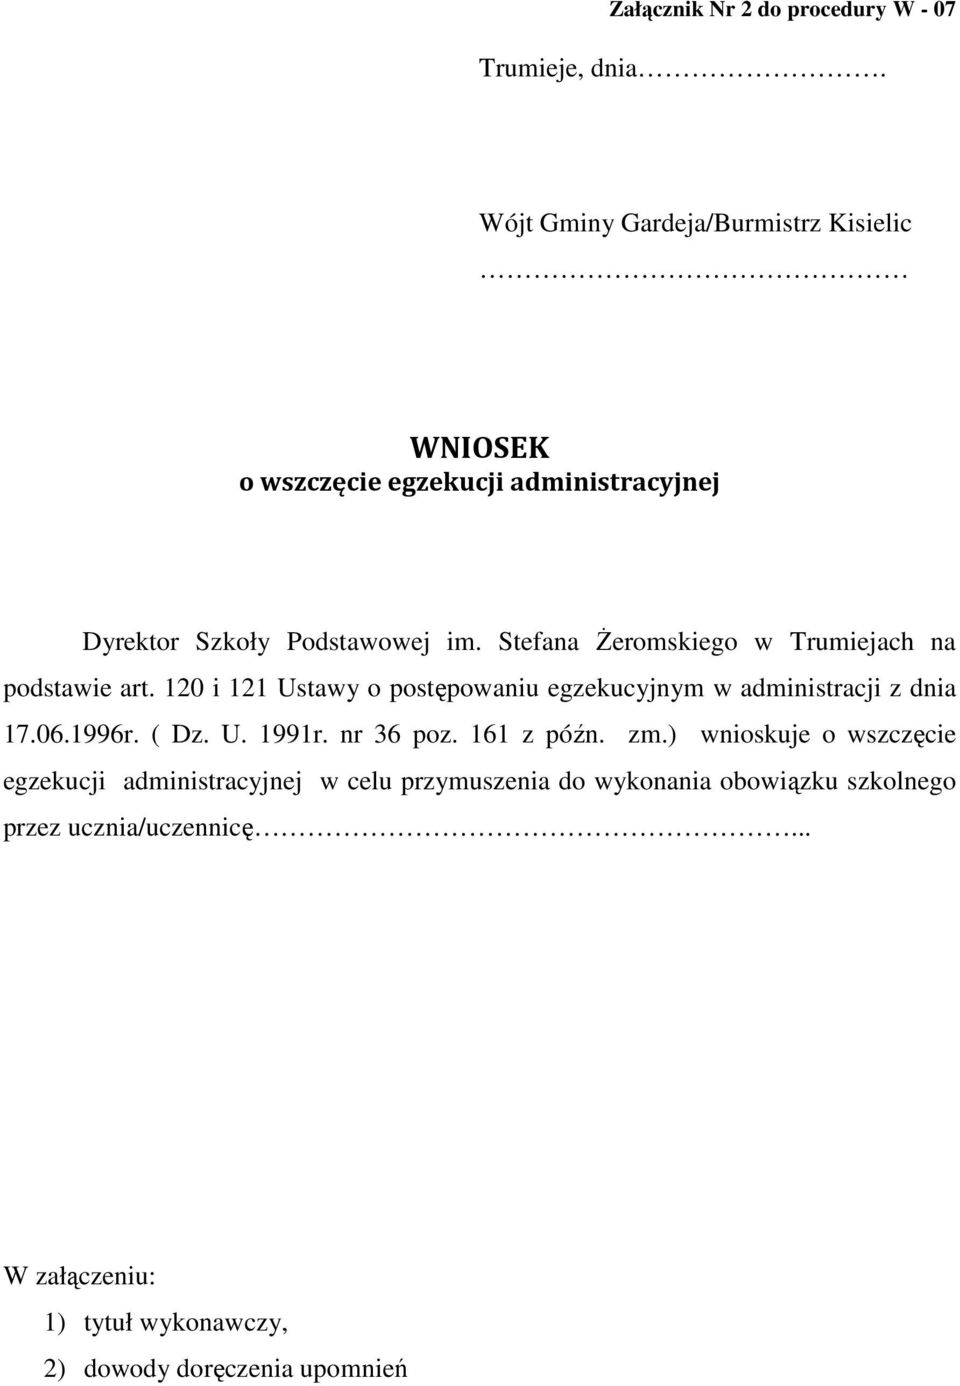 Stefana śeromskiego w Trumiejach na podstawie art. 120 i 121 Ustawy o postępowaniu egzekucyjnym w administracji z dnia 17.06.1996r.